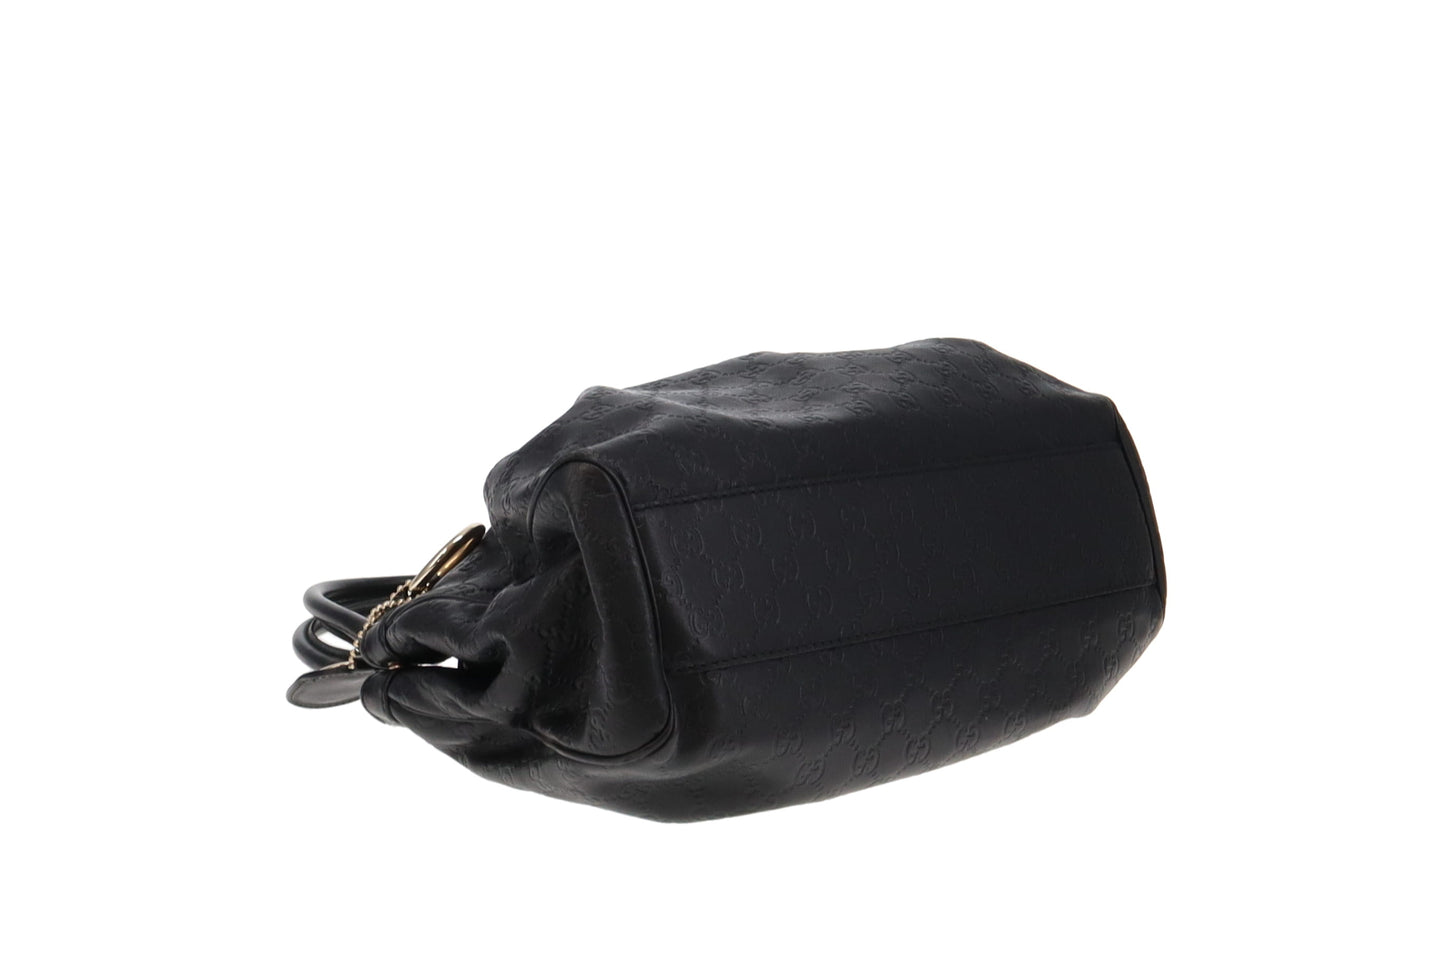 Gucci Black Guccissima Leather Classic Sukey Tote Bag